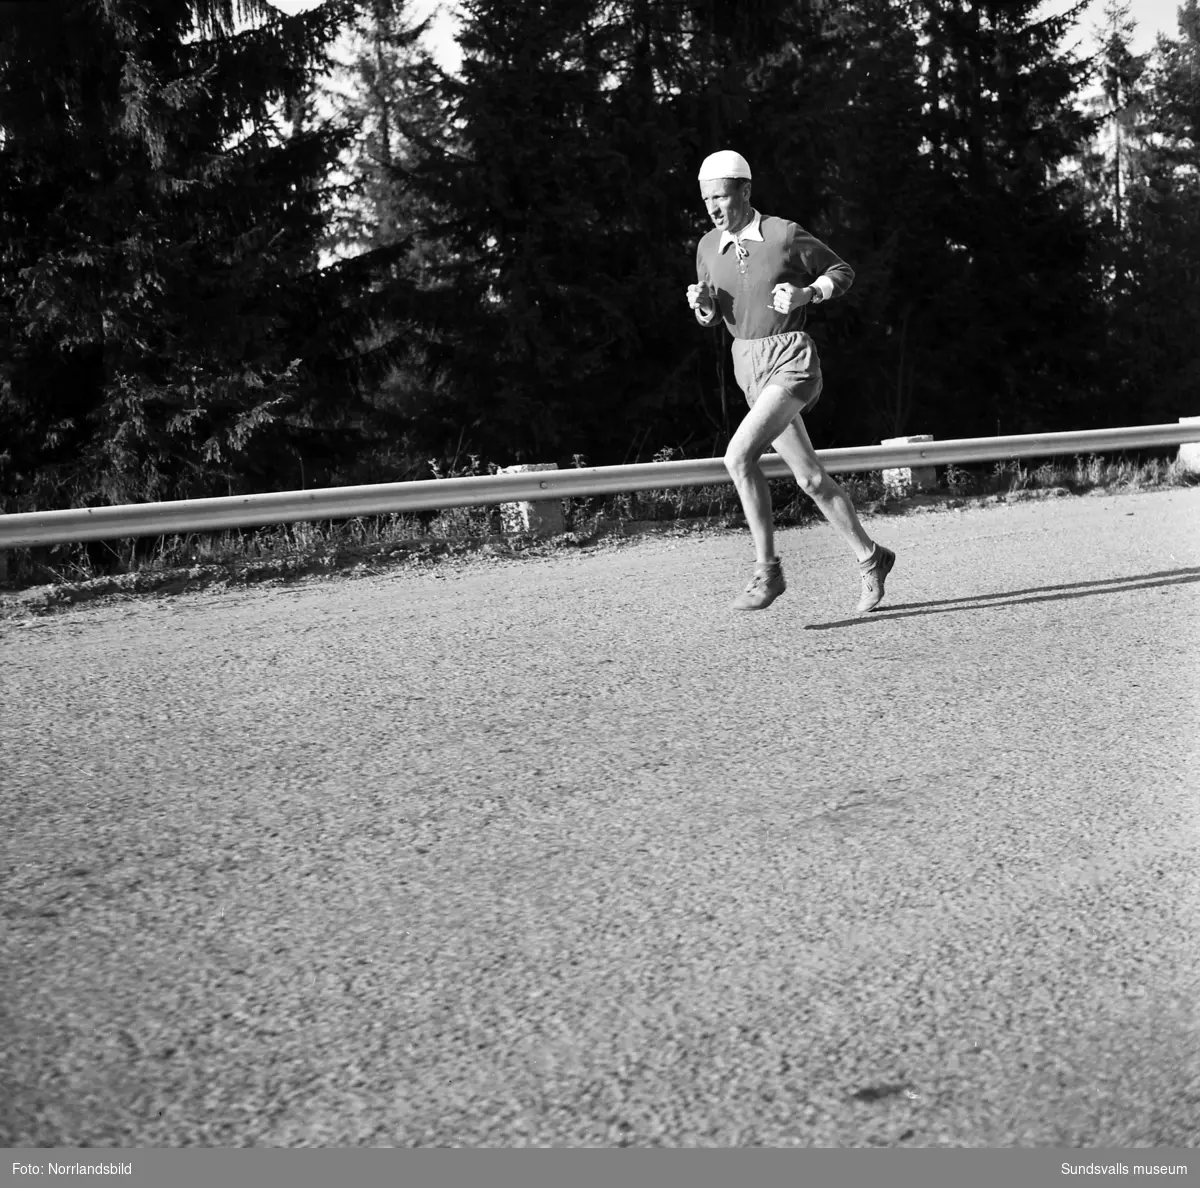 Rune Svensson, Sundsvall, tränar inför marathon.